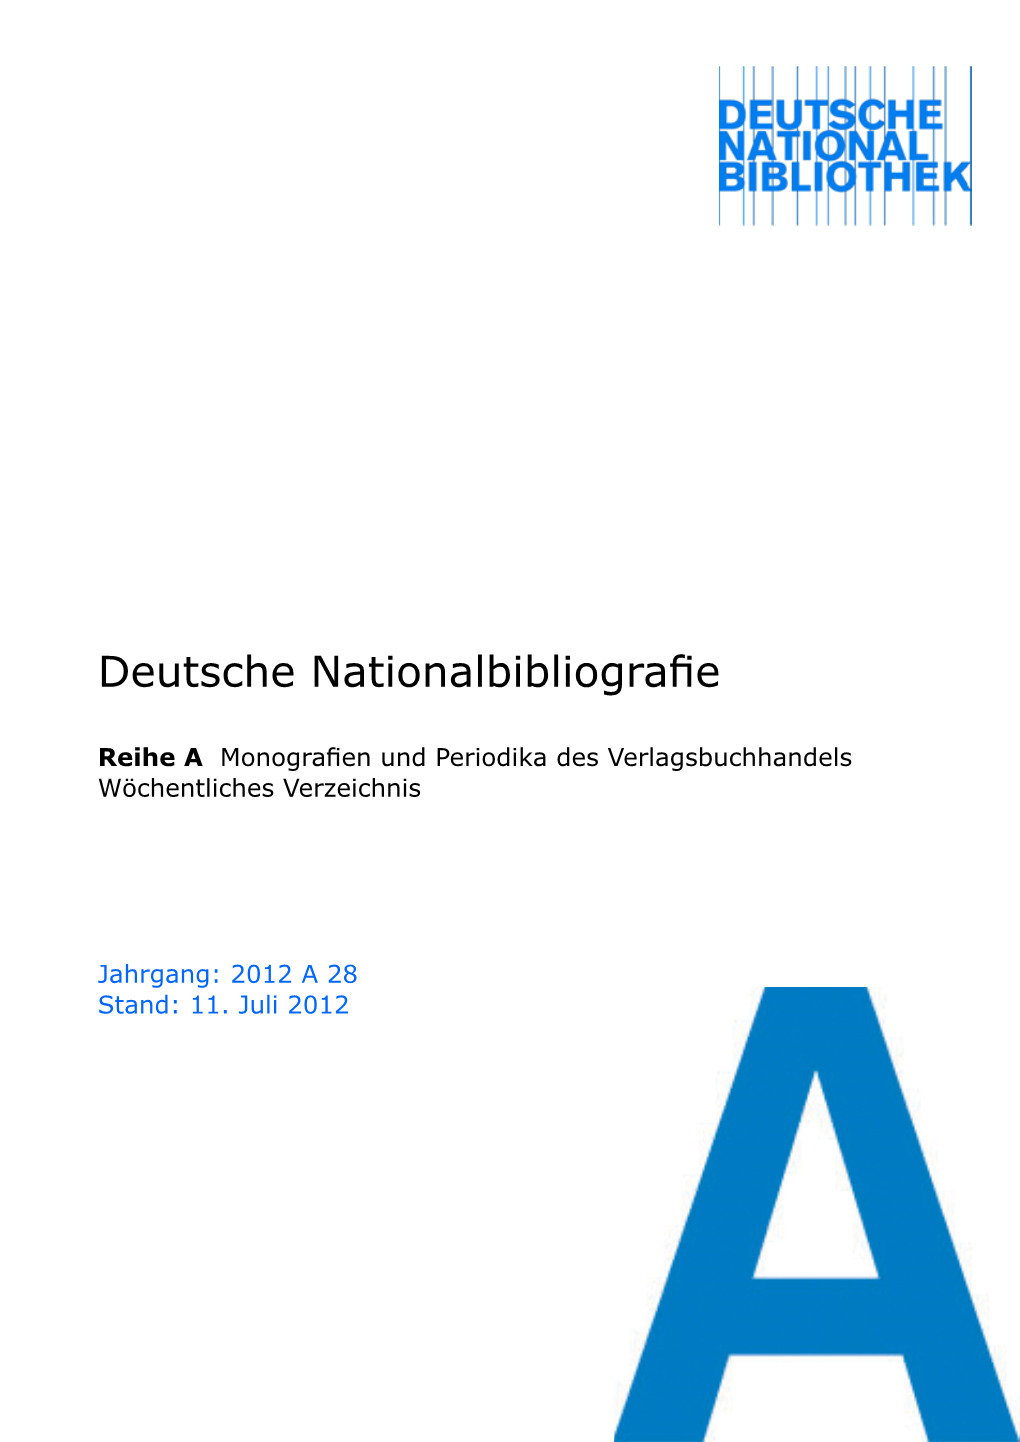 Deutsche Nationalbibliografie 2012 a 28